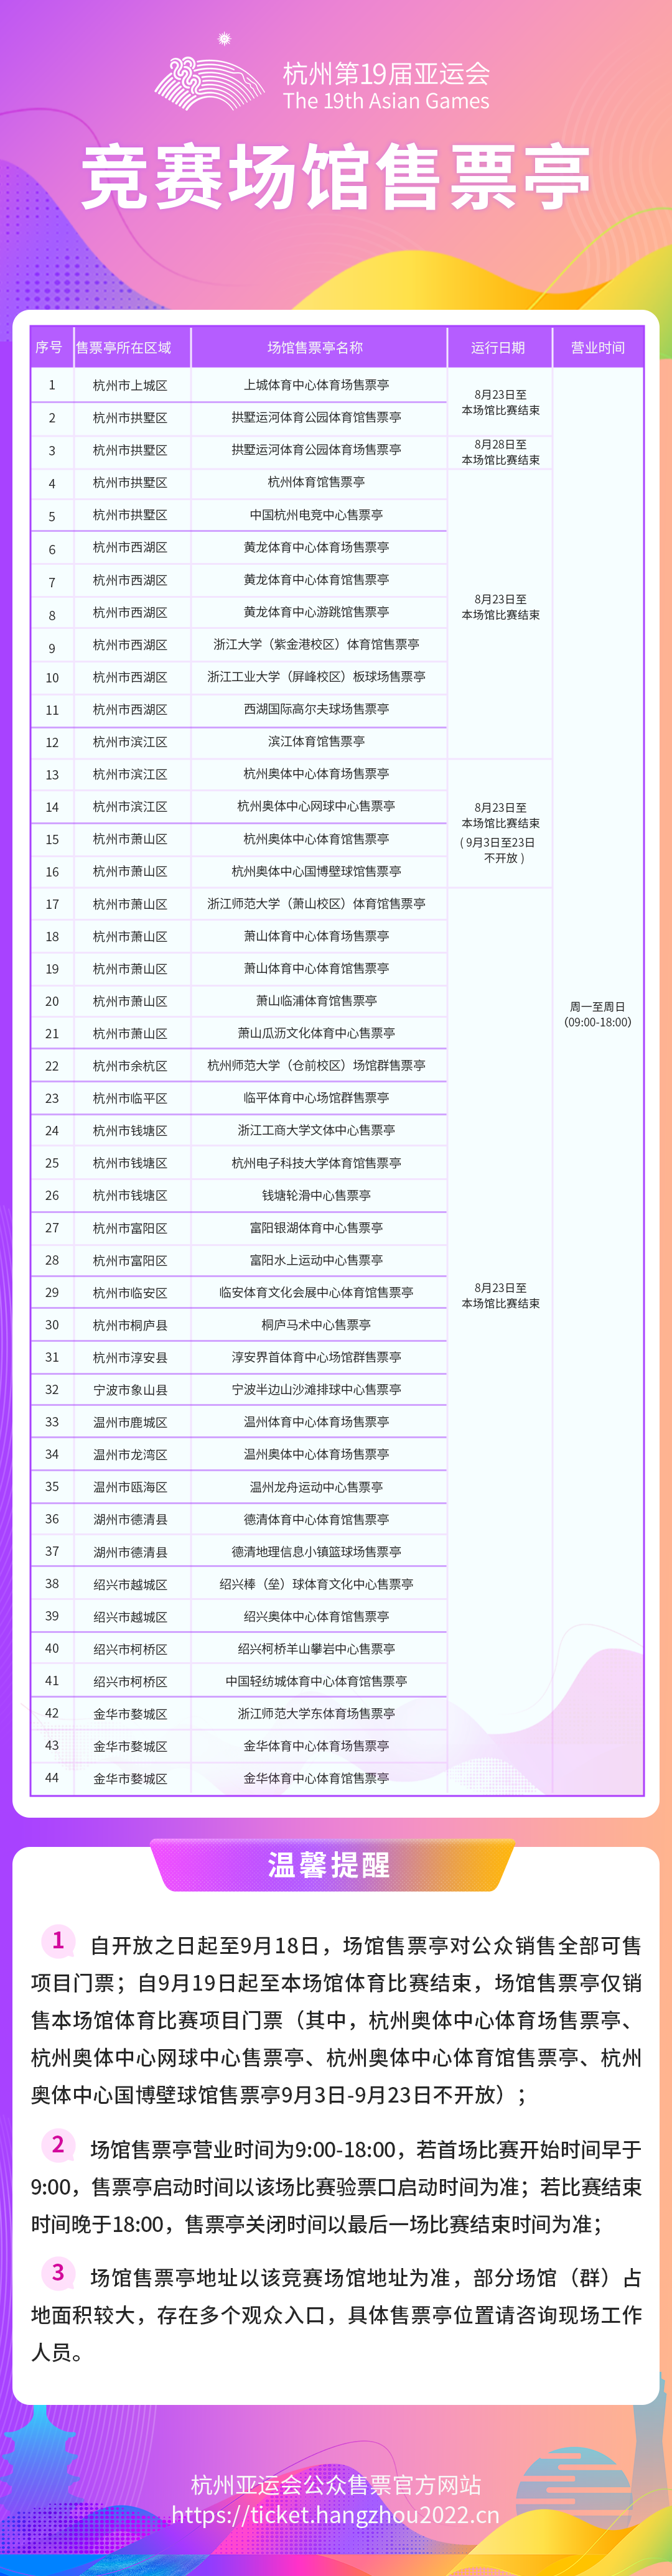 明起杭州亚运会体育比赛门票官方线下购票渠道陆续开放